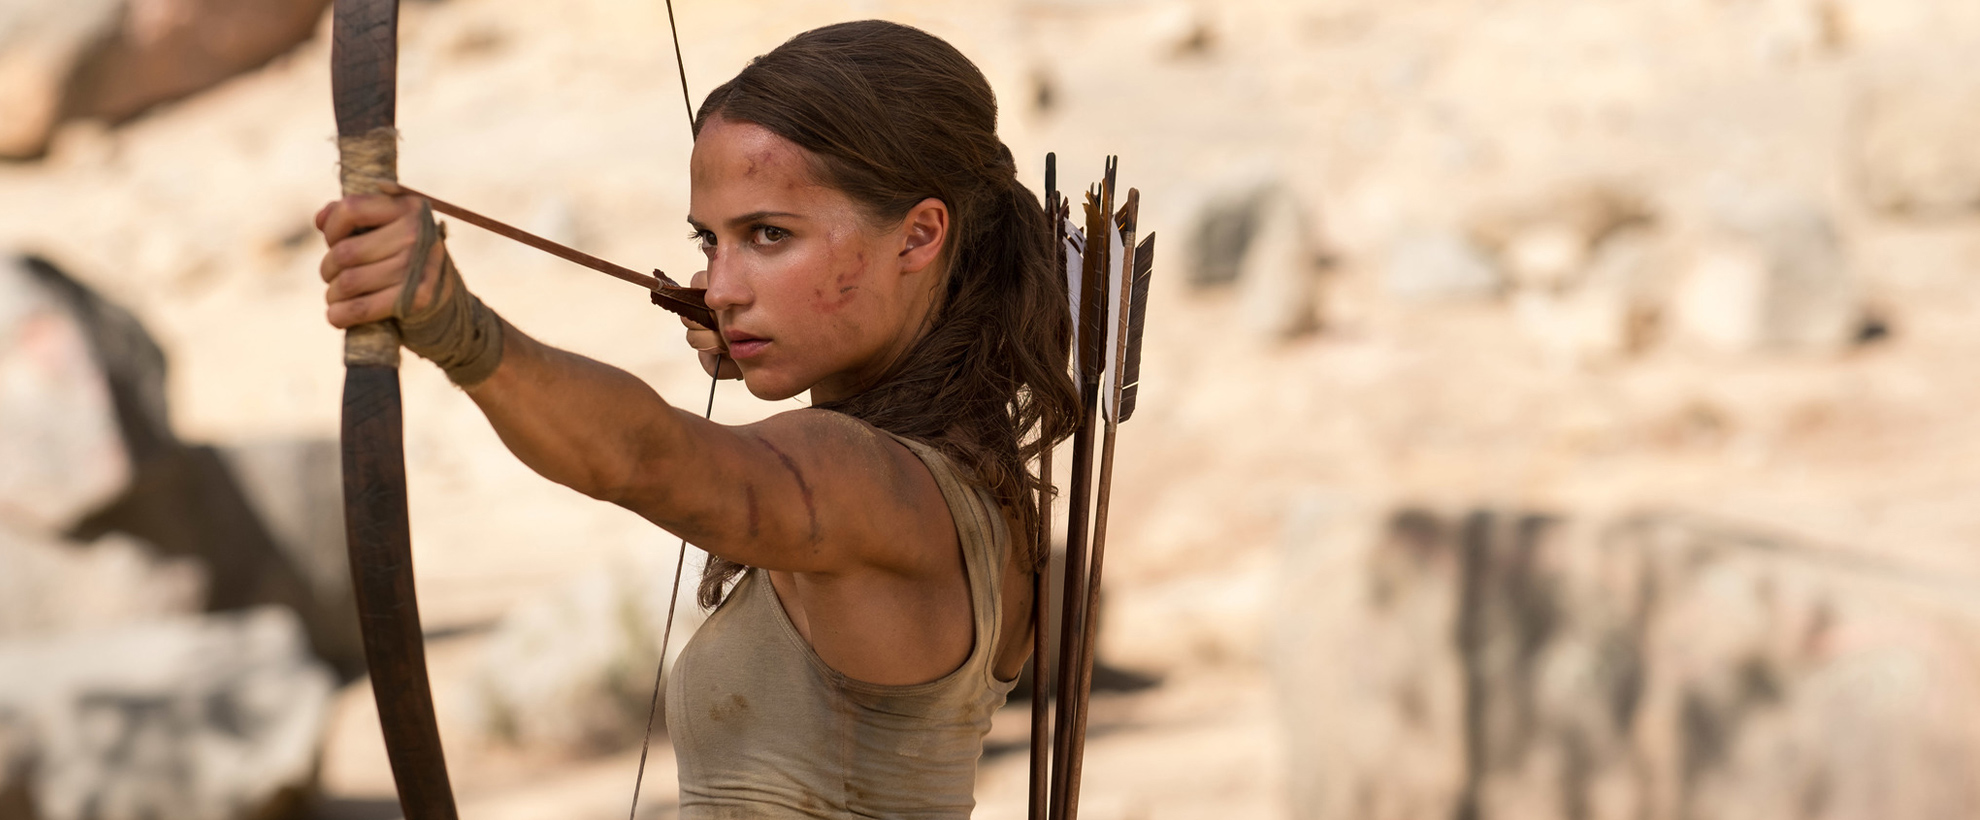 Lara Croft (Alicia Vikander) uses a bow and arrow